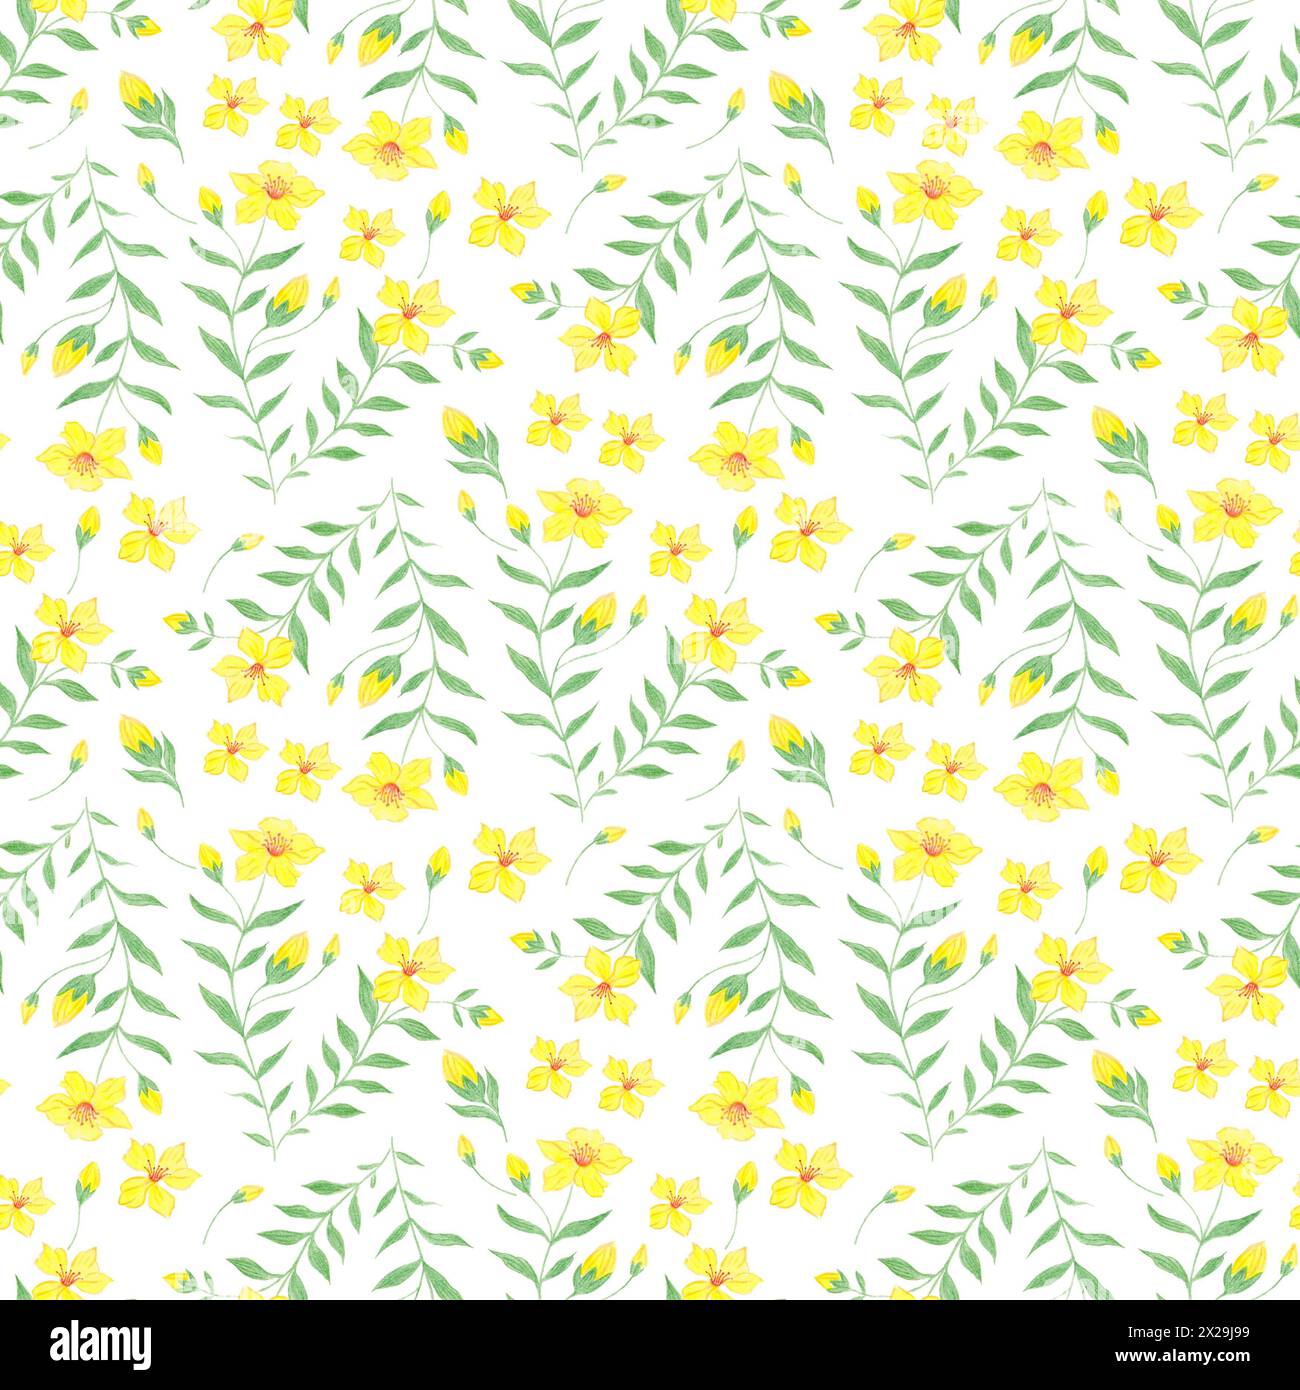 Illustrazione a motivi botanici senza cuciture con rami verdi e fiori gialli su sfondo bianco. Tema primavera ed estate. Foto Stock